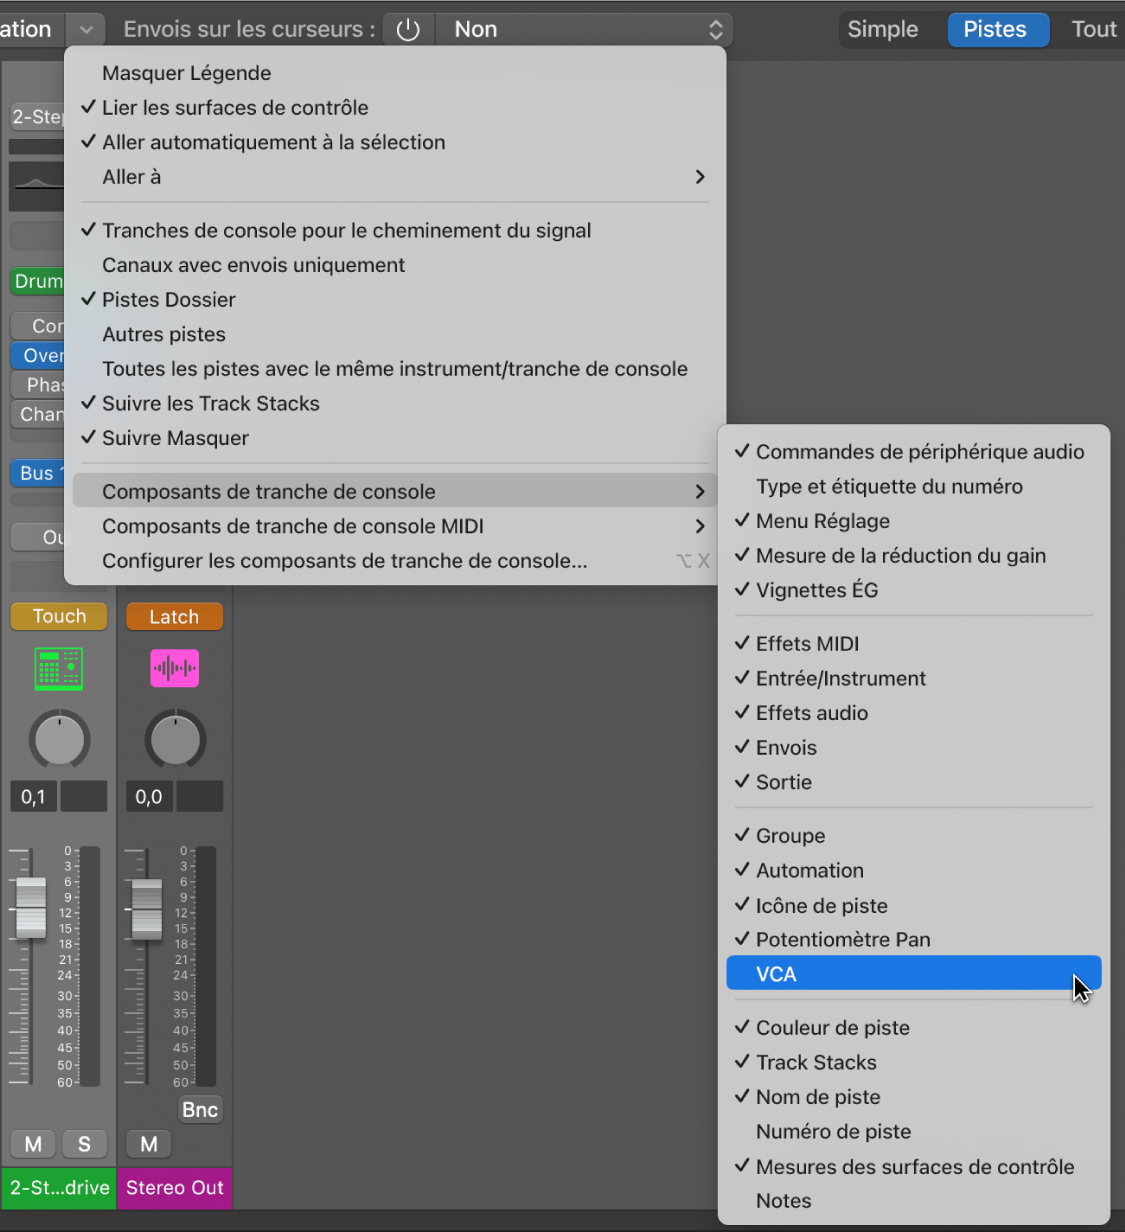 Figure. Sous-menu « Composants de tranche de console » dans le menu Présentation de la table de mixage.